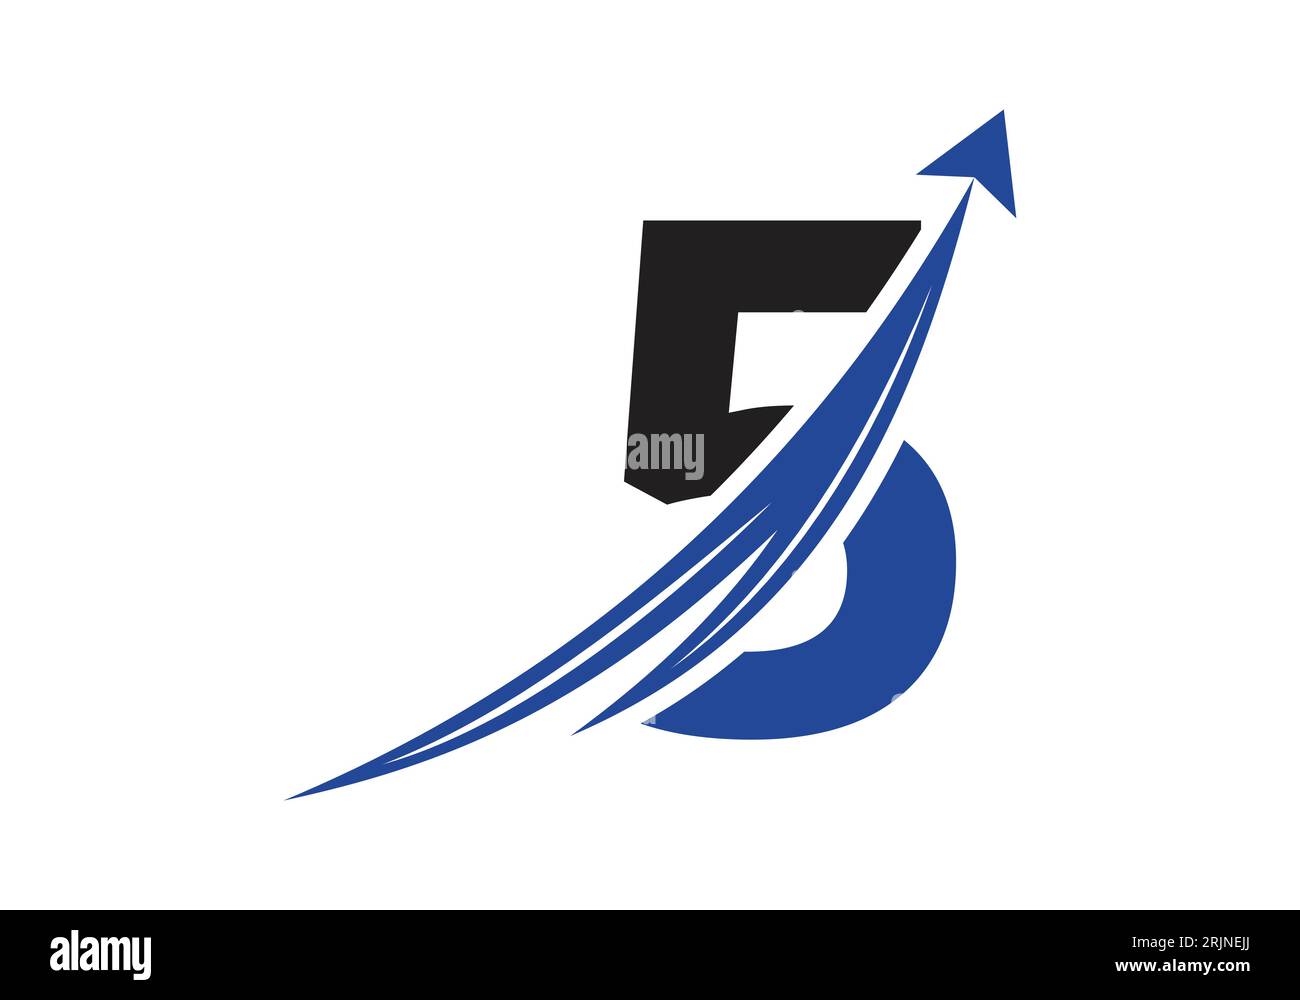 Logo de financement avec concept de 5 lettres. Concept de logo financier ou de réussite. Logo pour l'entreprise comptable et l'identité de l'entreprise Illustration de Vecteur